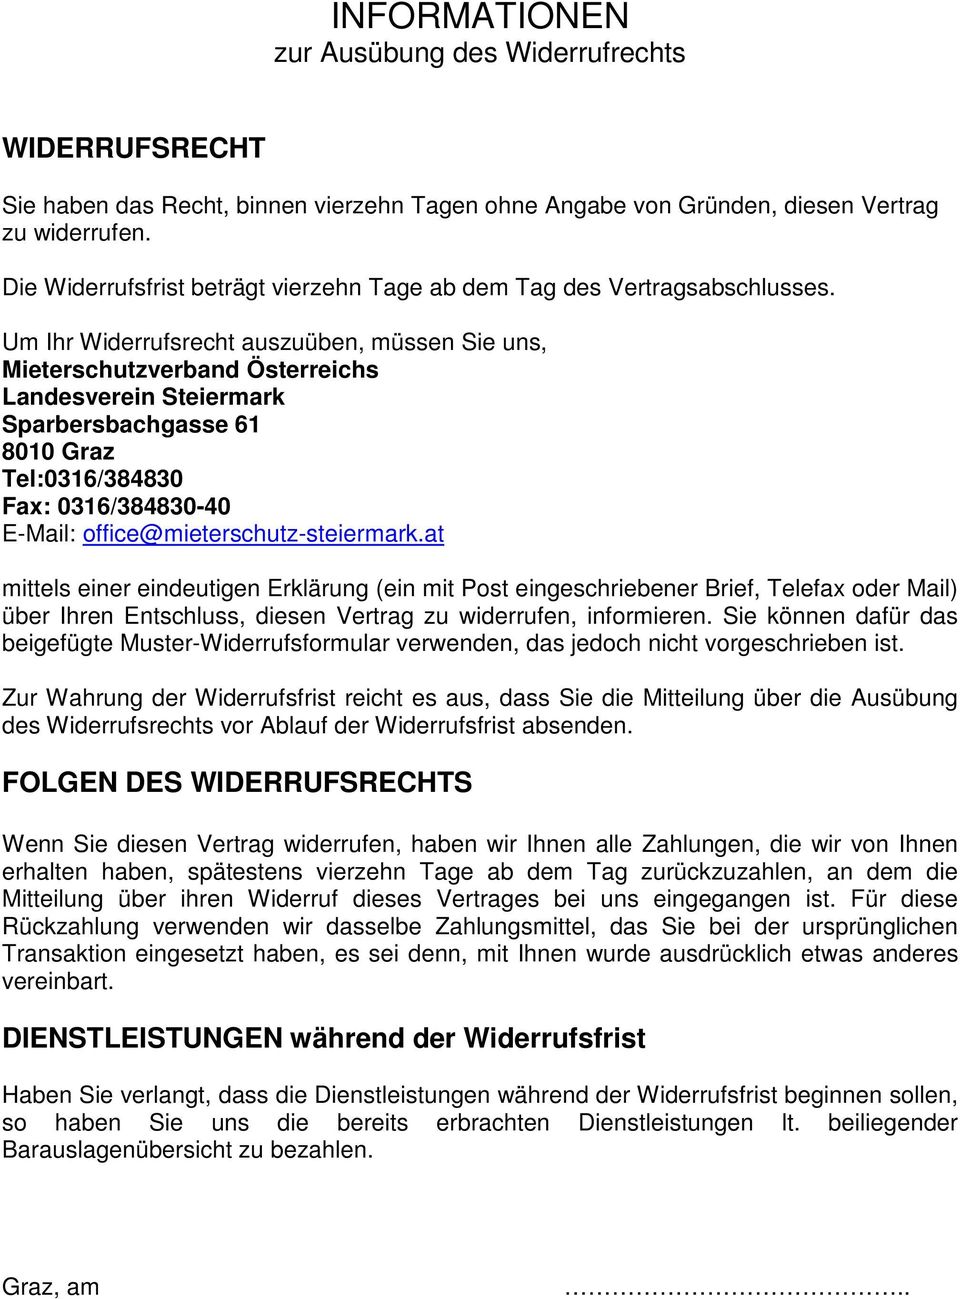 Um Ihr Widerrufsrecht auszuüben, müssen Sie uns, Mieterschutzverband Österreichs Sparbersbachgasse 61 8010 Graz Tel:0316/384830 Fax: 0316/384830-40 E-Mail: office@mieterschutz-steiermark.